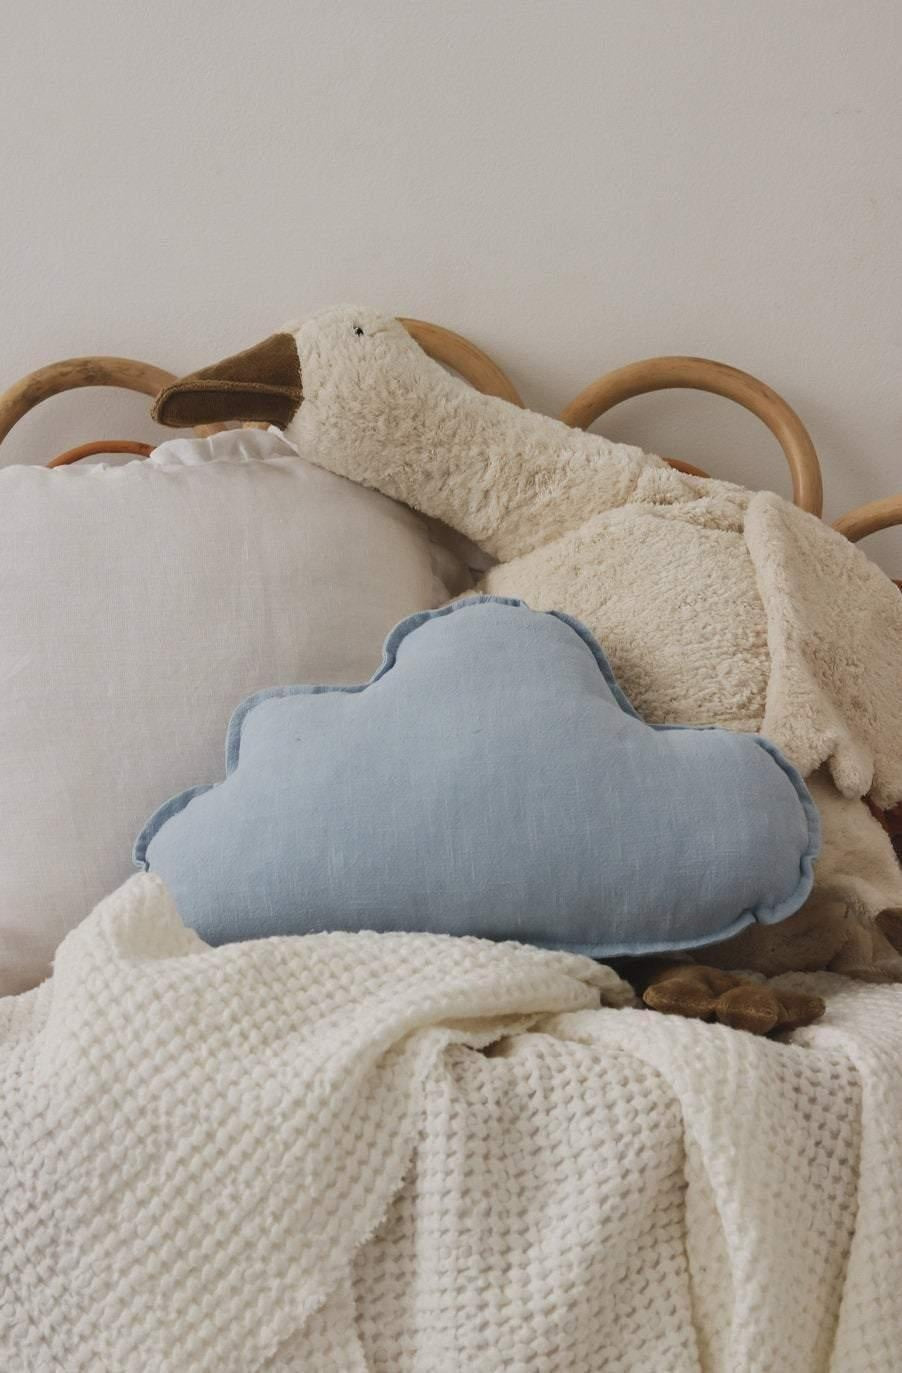 Cloud Pillow Linen “Baby Blue” | Kids Room & Nursery Decor